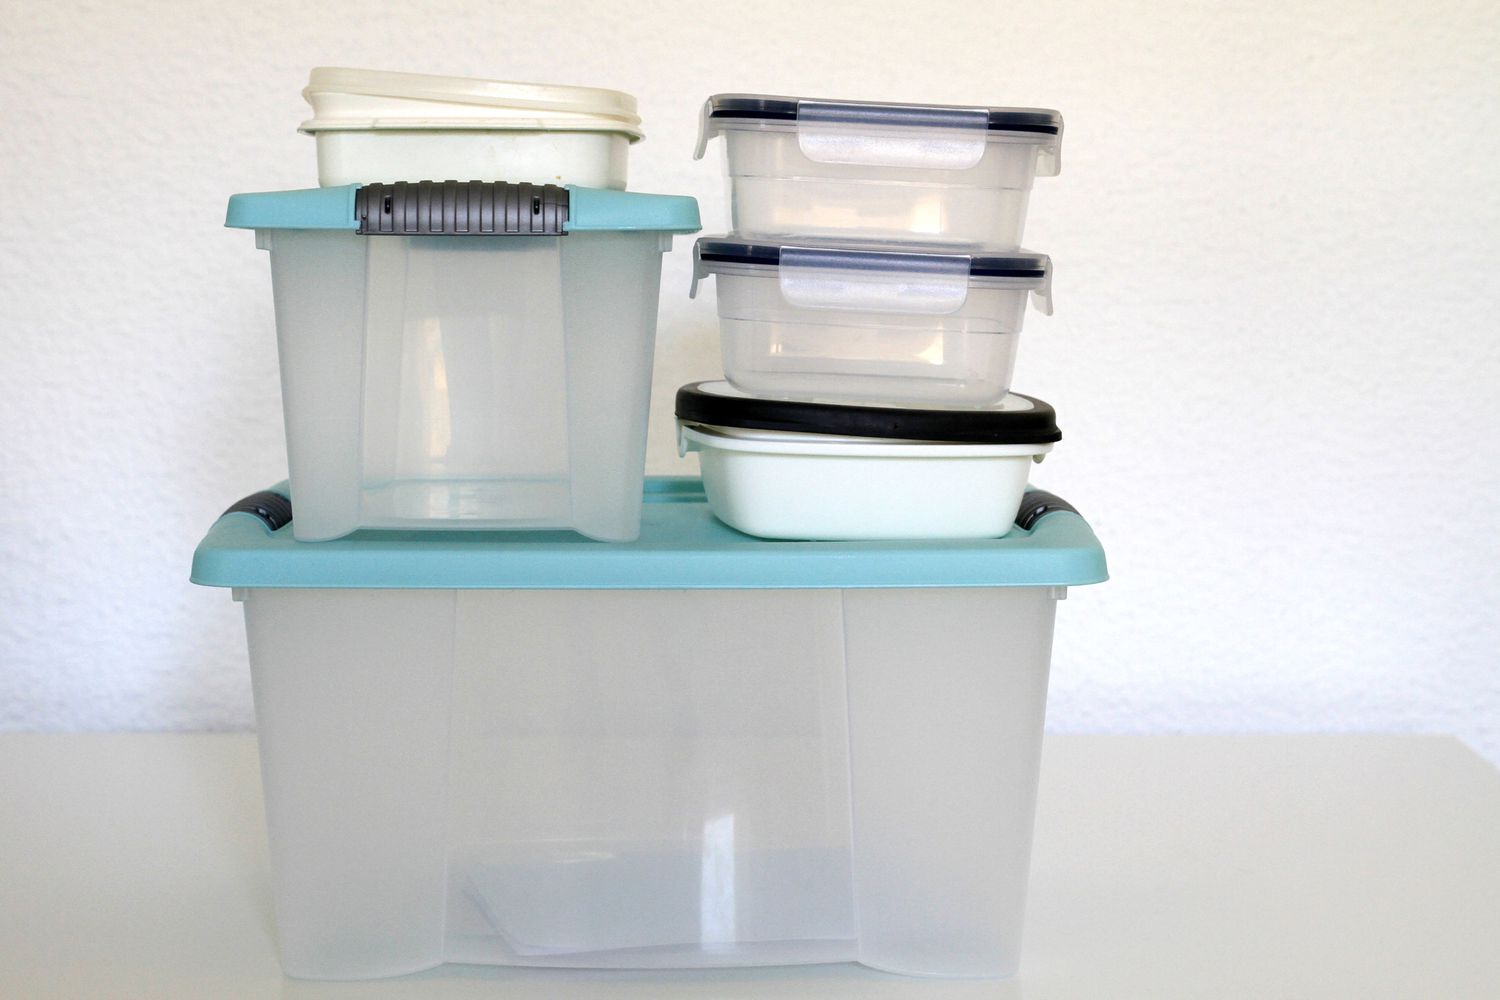 Leere durchsichtige Plastikbehälter mit blauen Deckeln.